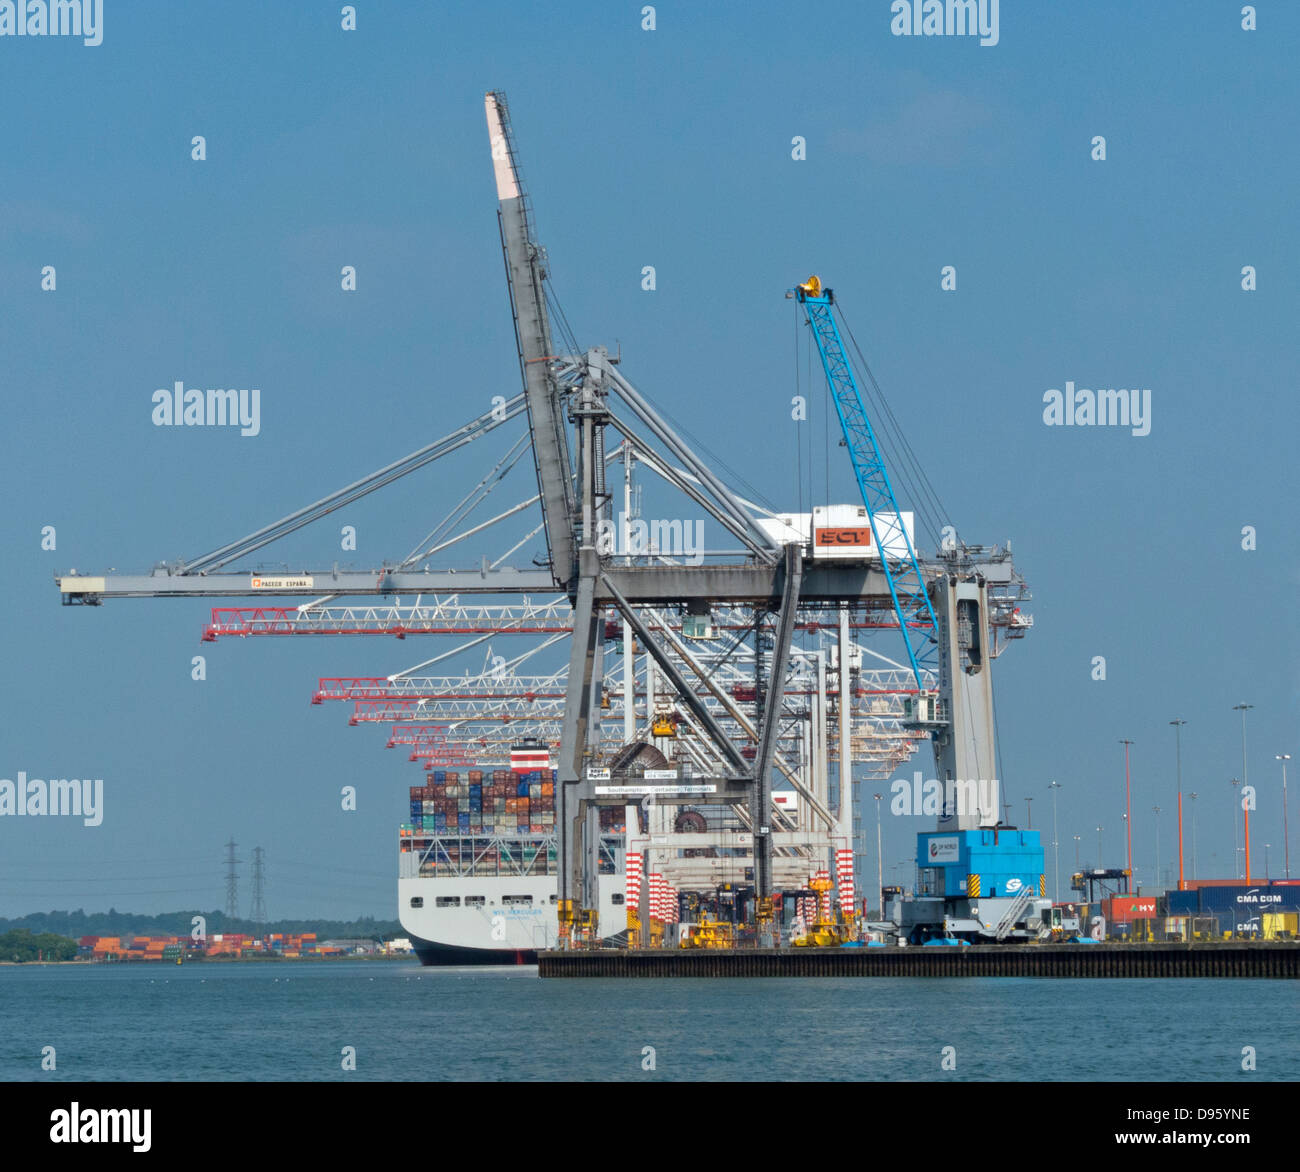 Southampton-Container-Hafen große Terminal handling Schiffe Krane Fracht Export Import riesig großen massiv hoch hoher Fluss-Test Stockfoto